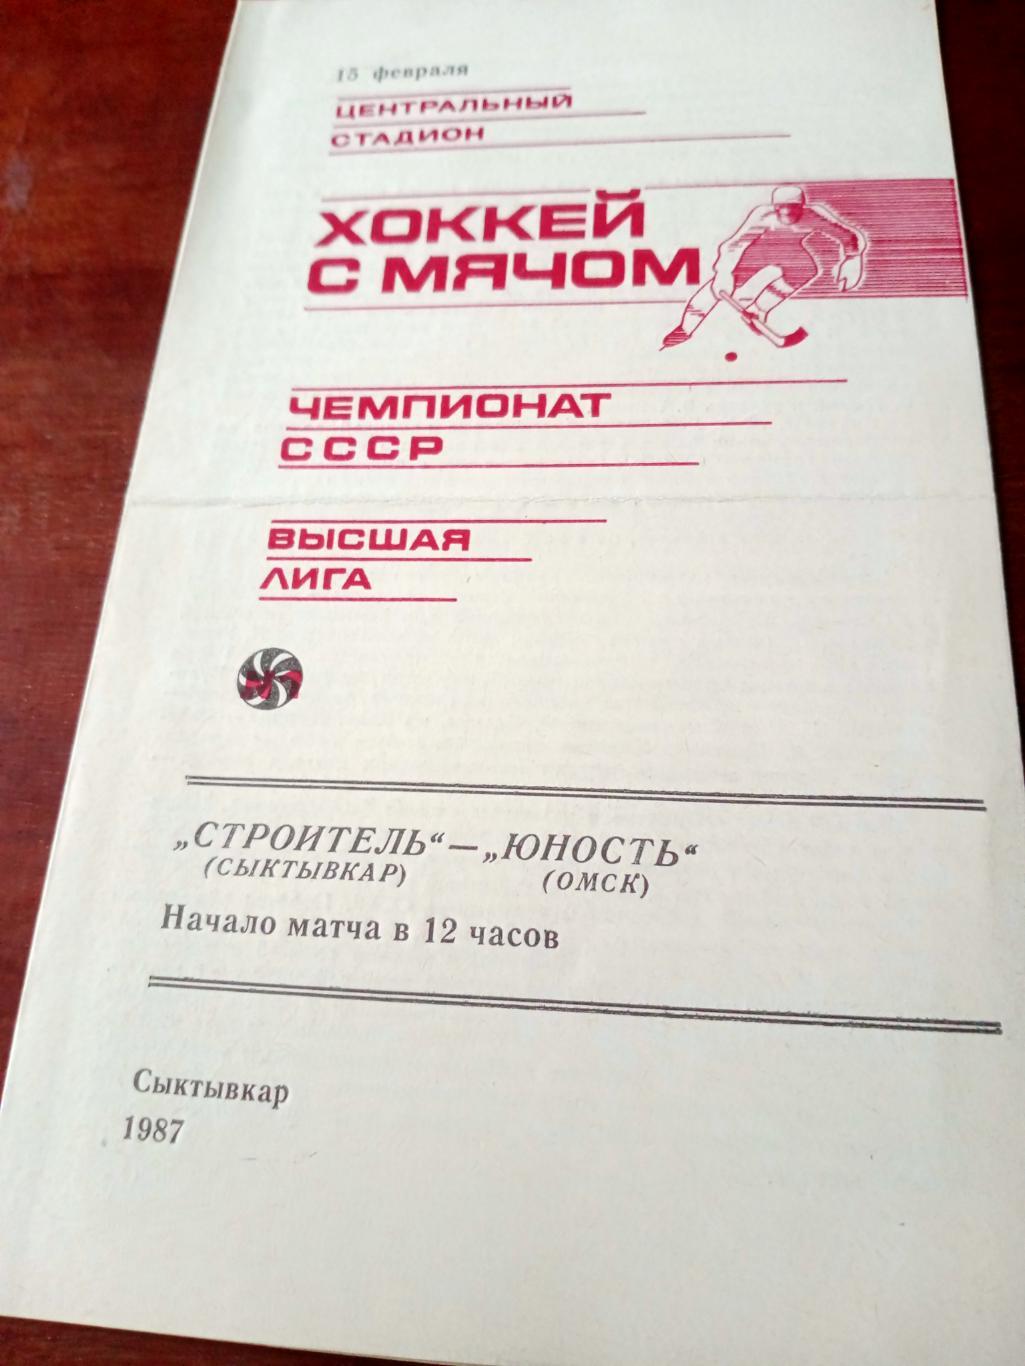 Строитель Сыктывкар - Юность Омск. 15 февраля 1987 год